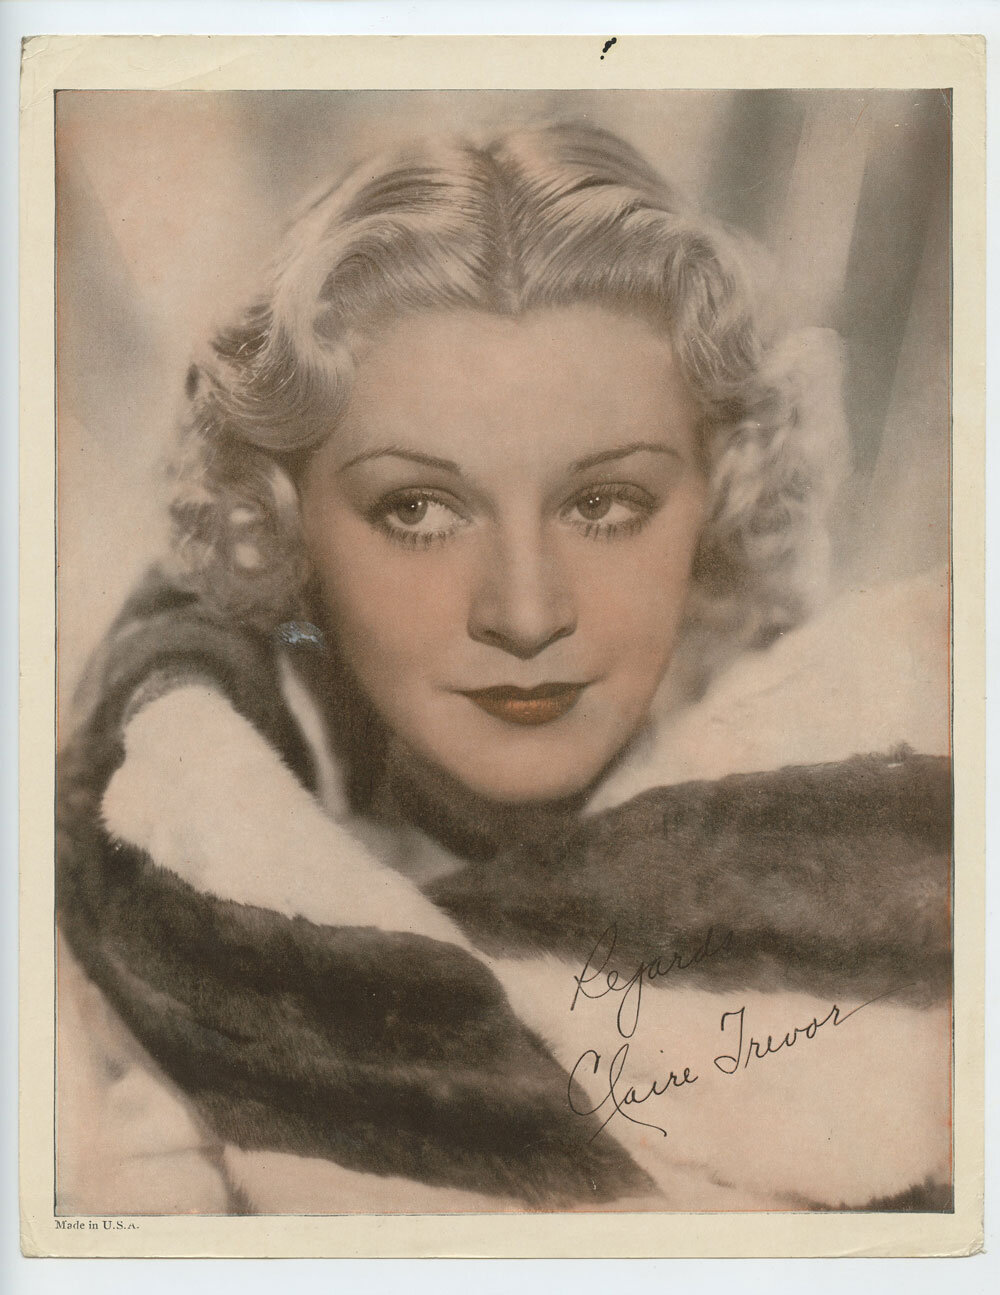 Claire Trevor Photo Print 1930s Publicity Promo Original Vintage